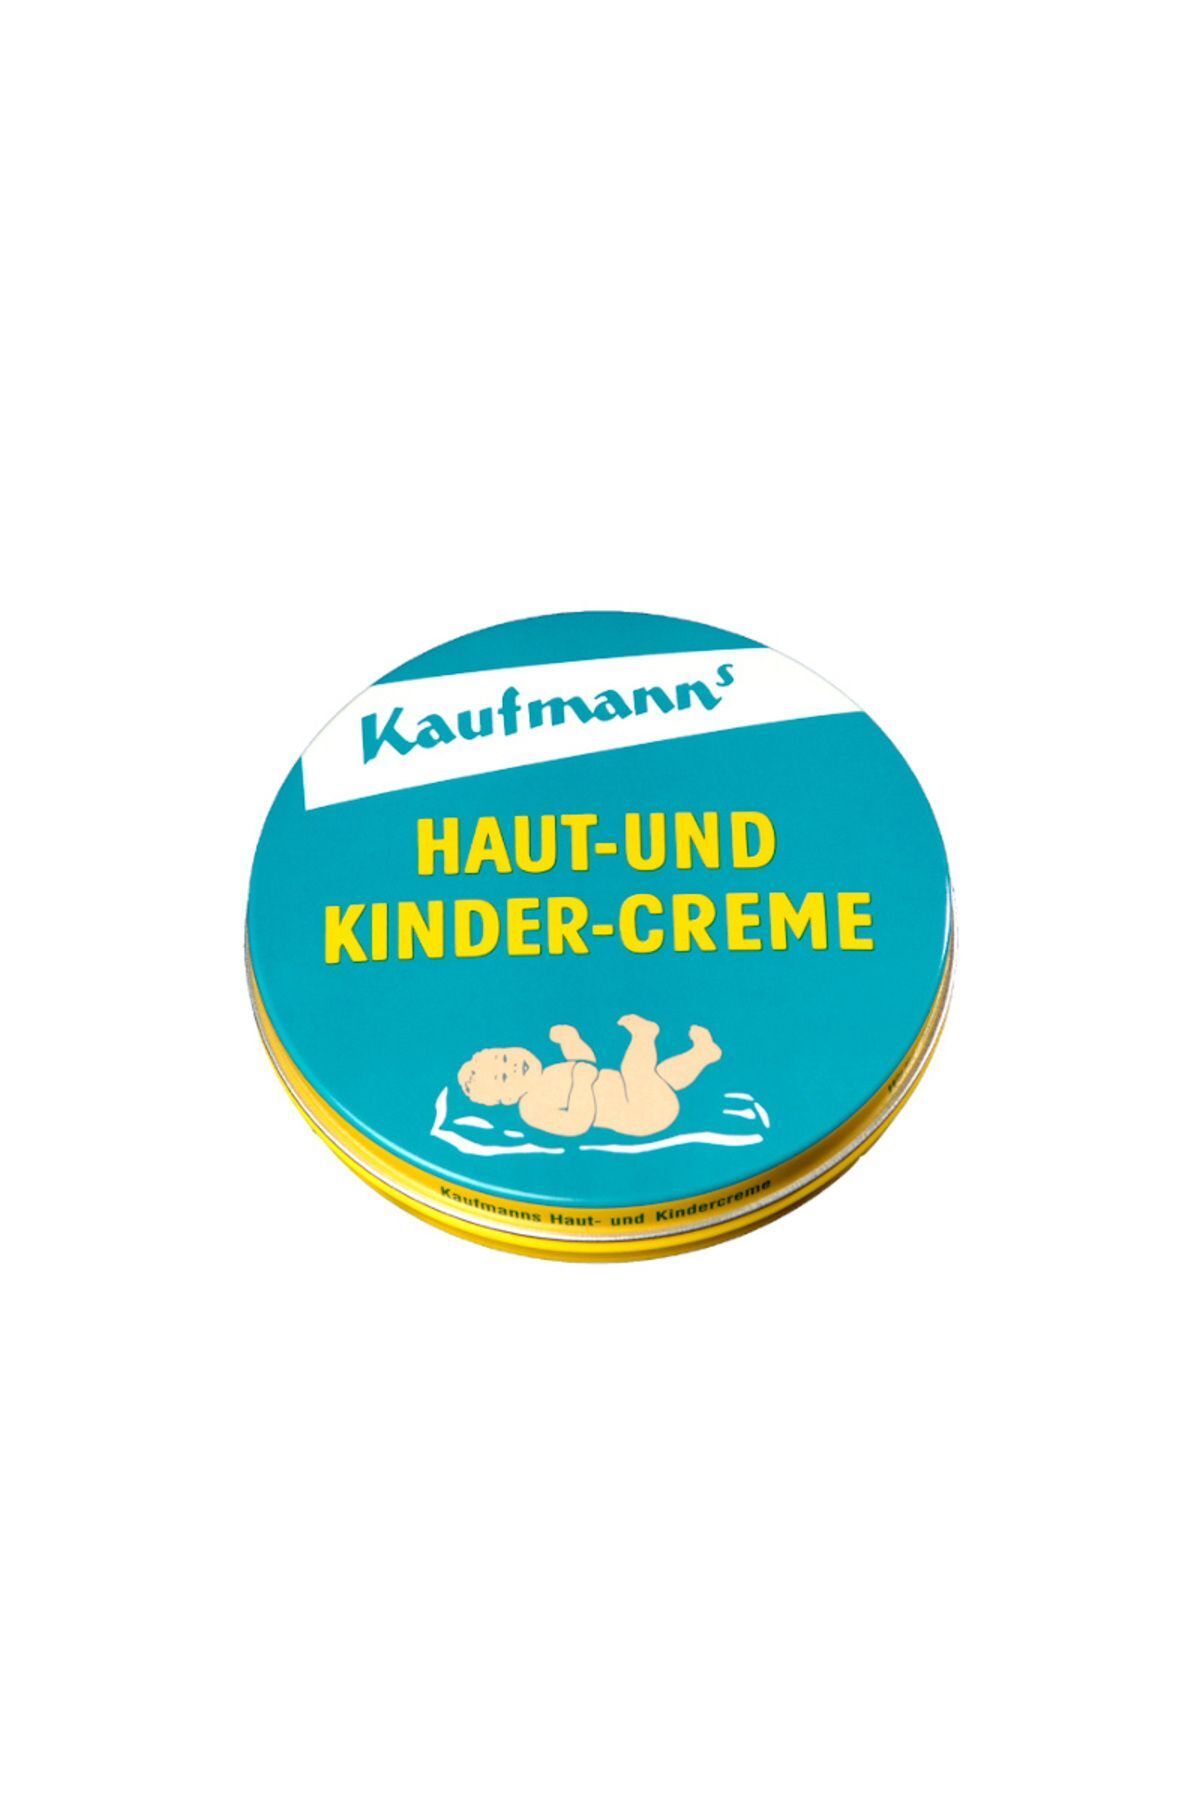 kaufmann's Haut und Kinder Creme - Bebek ve Yetişkinler İçin Cilt Bakım ve Pişik Kremi 75ml